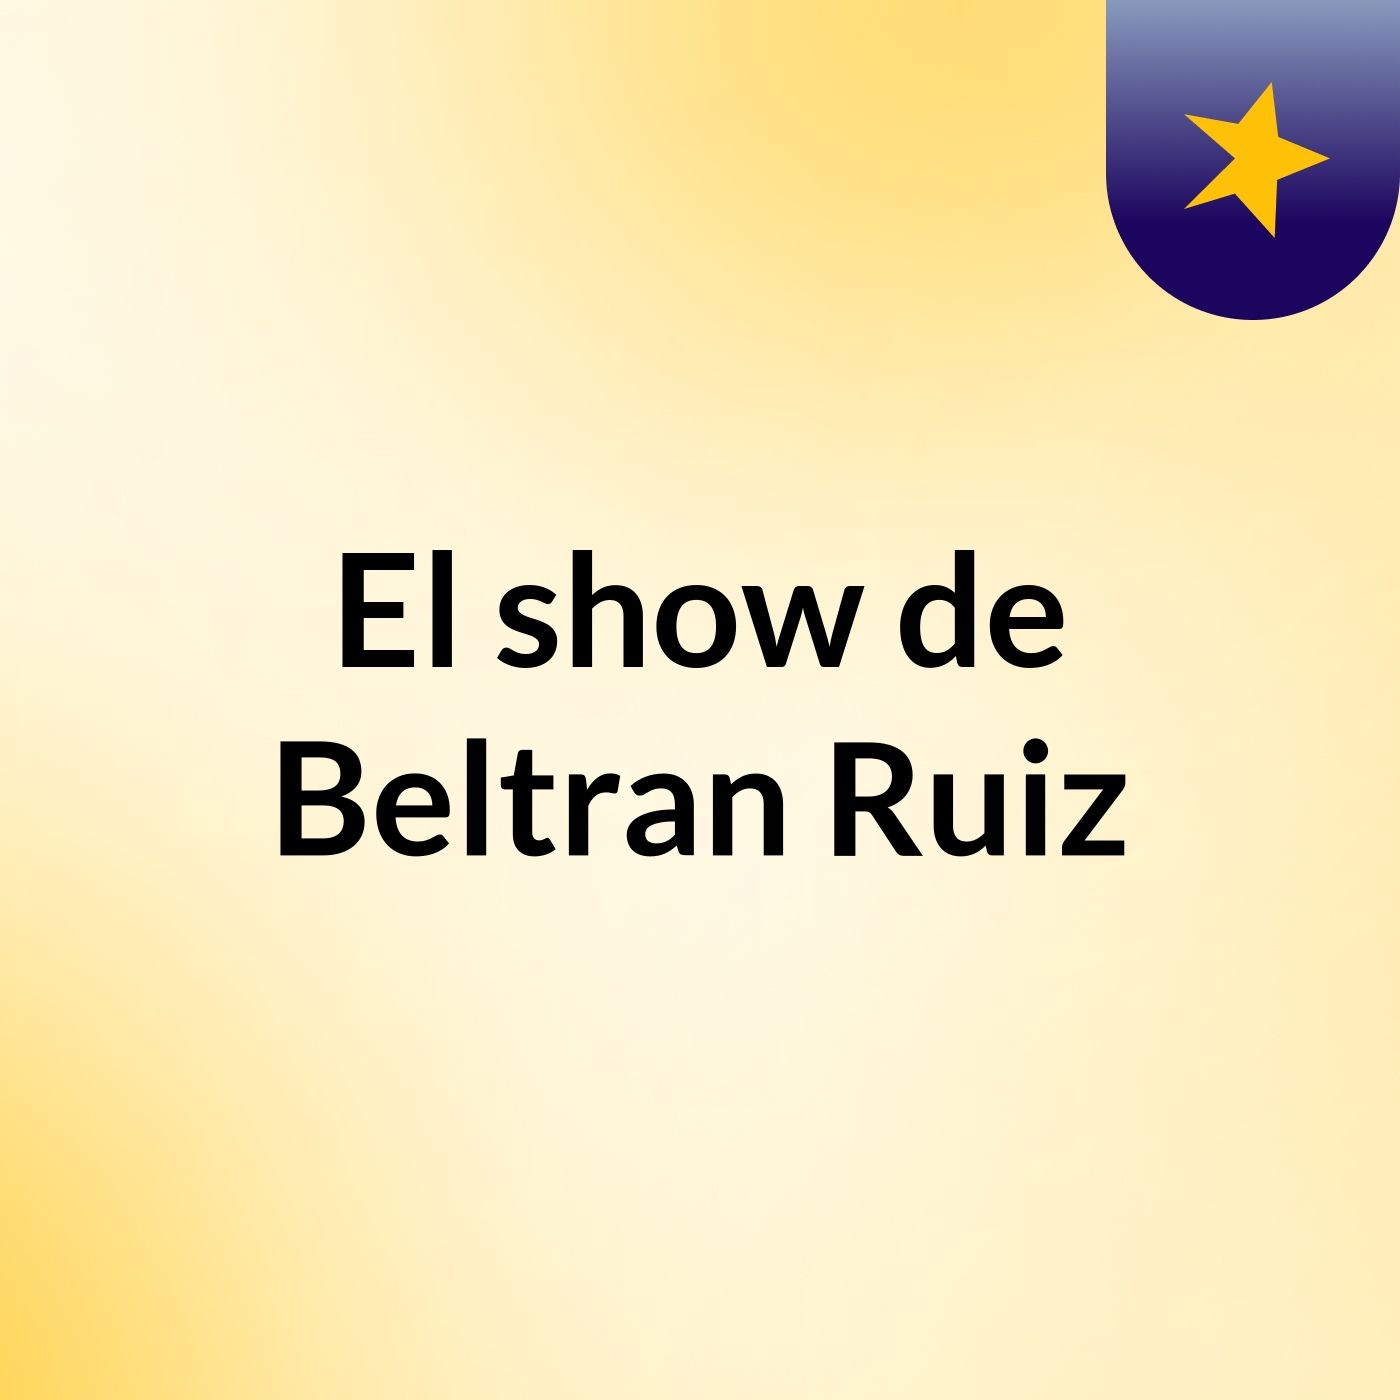 Episodio 4 - El show de Beltran Ruiz